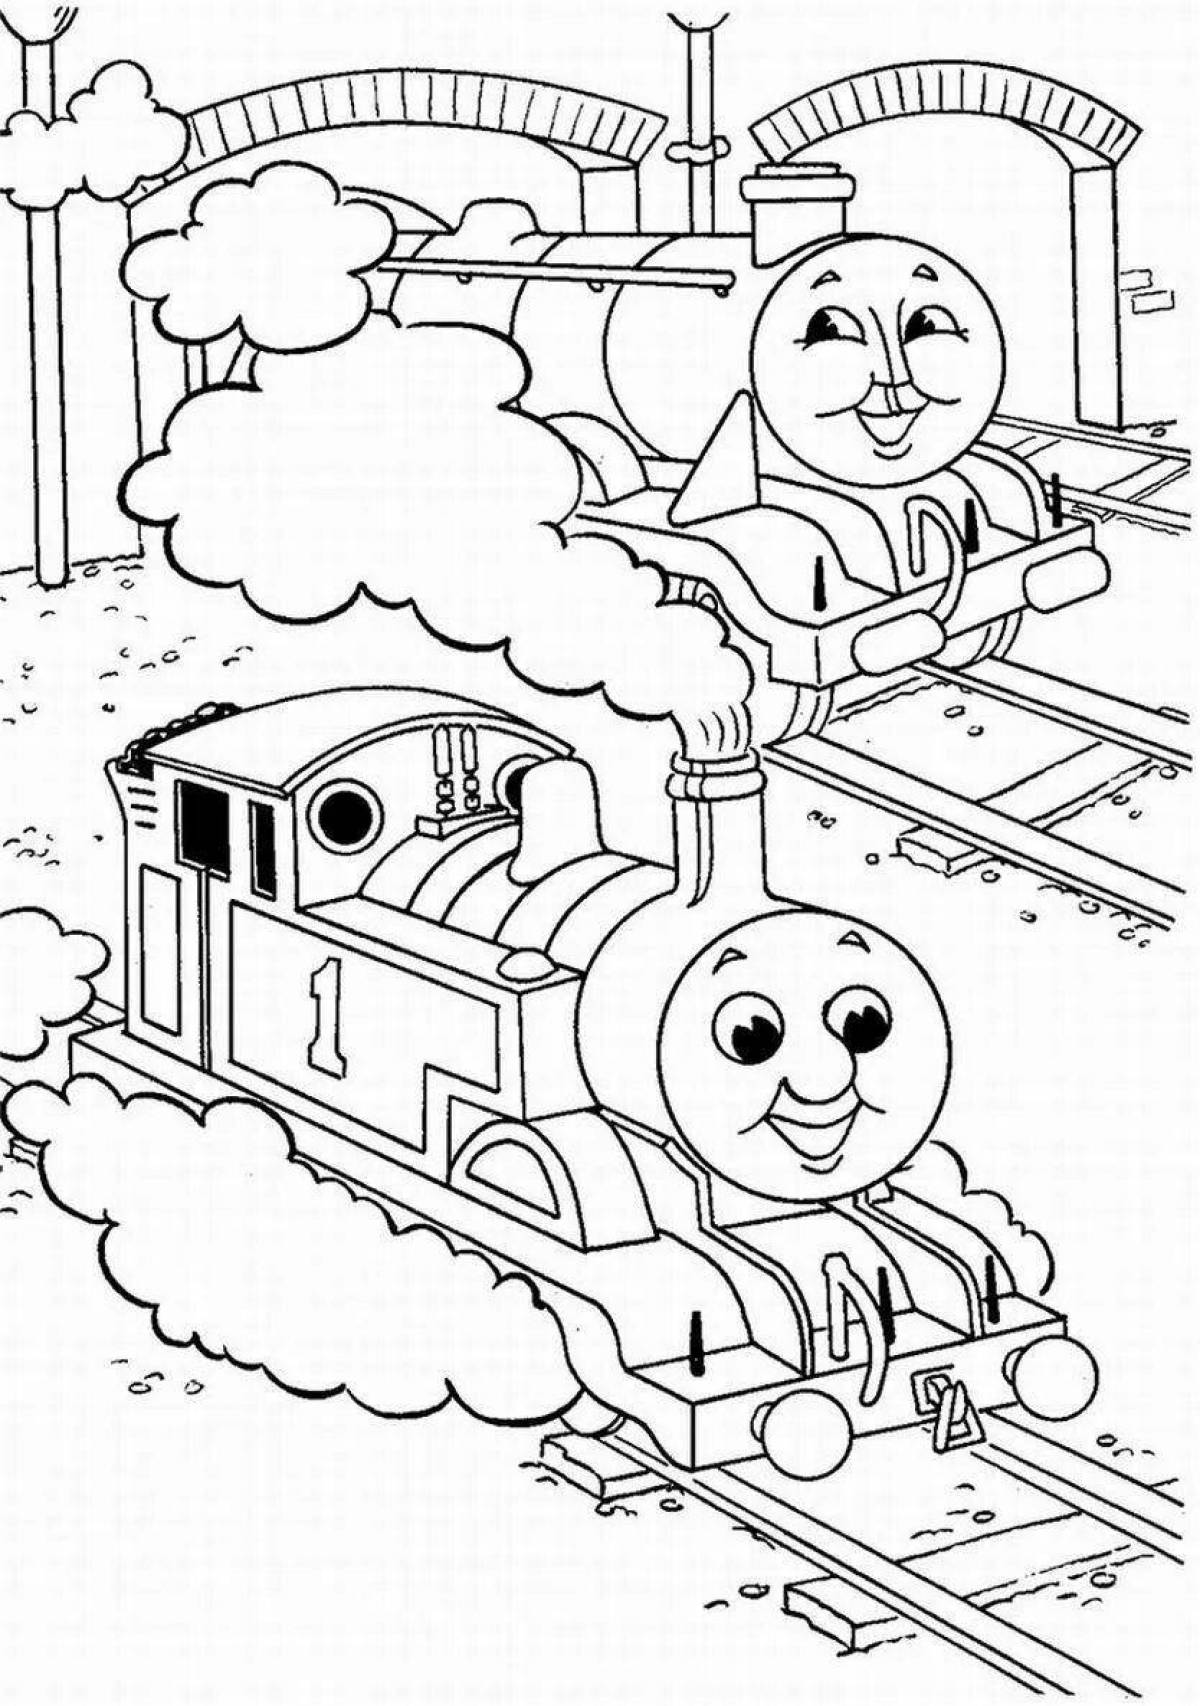 Exquisite thomas locomotive coloring book